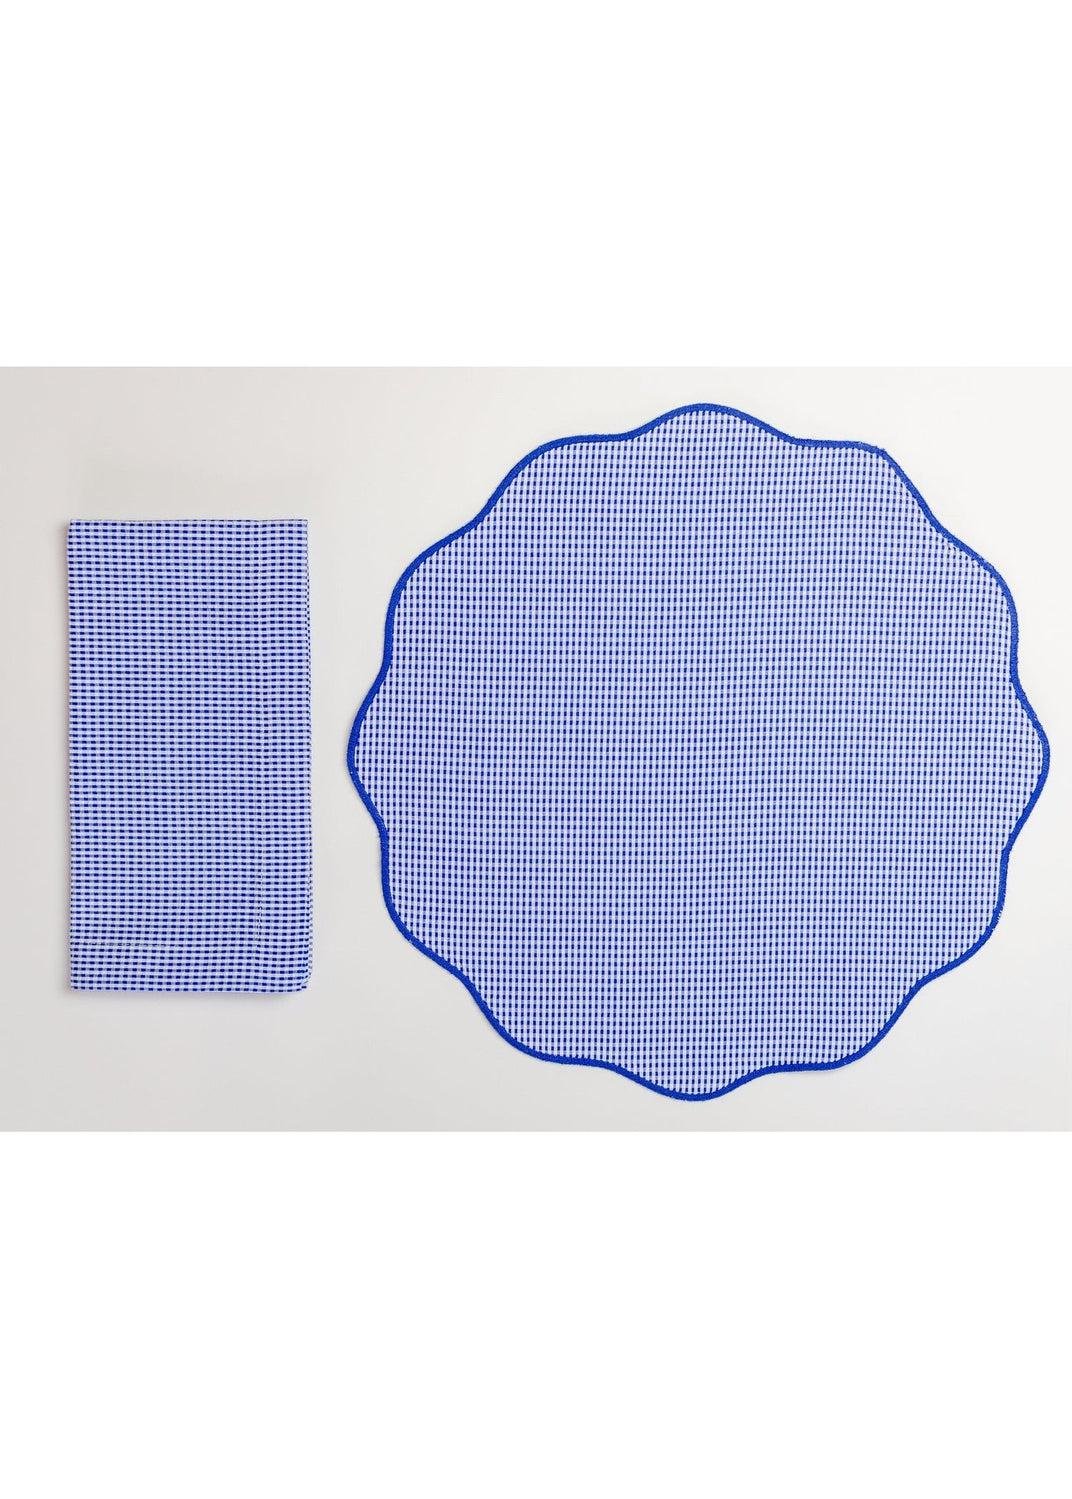 Placemat/Napkin 4/pc Set - Blue Gingham Check/Blue Set